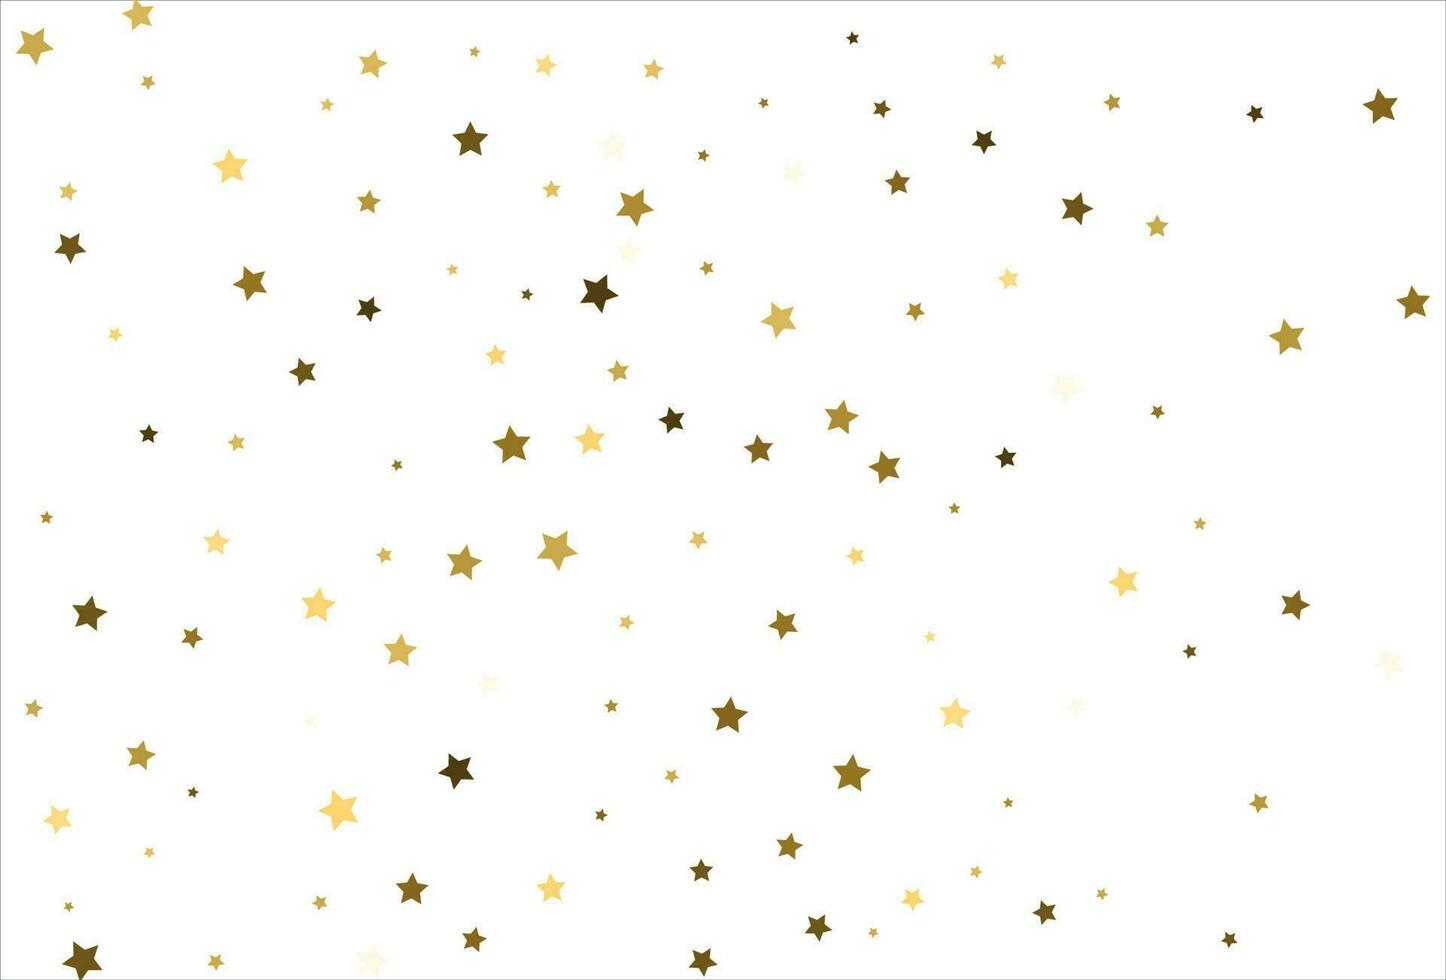 Zufällig fallende goldene Sterne auf weißem Hintergrund. glitzermuster für banner, grußkarte, weihnachts- und neujahrskarte, einladung, postkarte, papierverpackung vektor